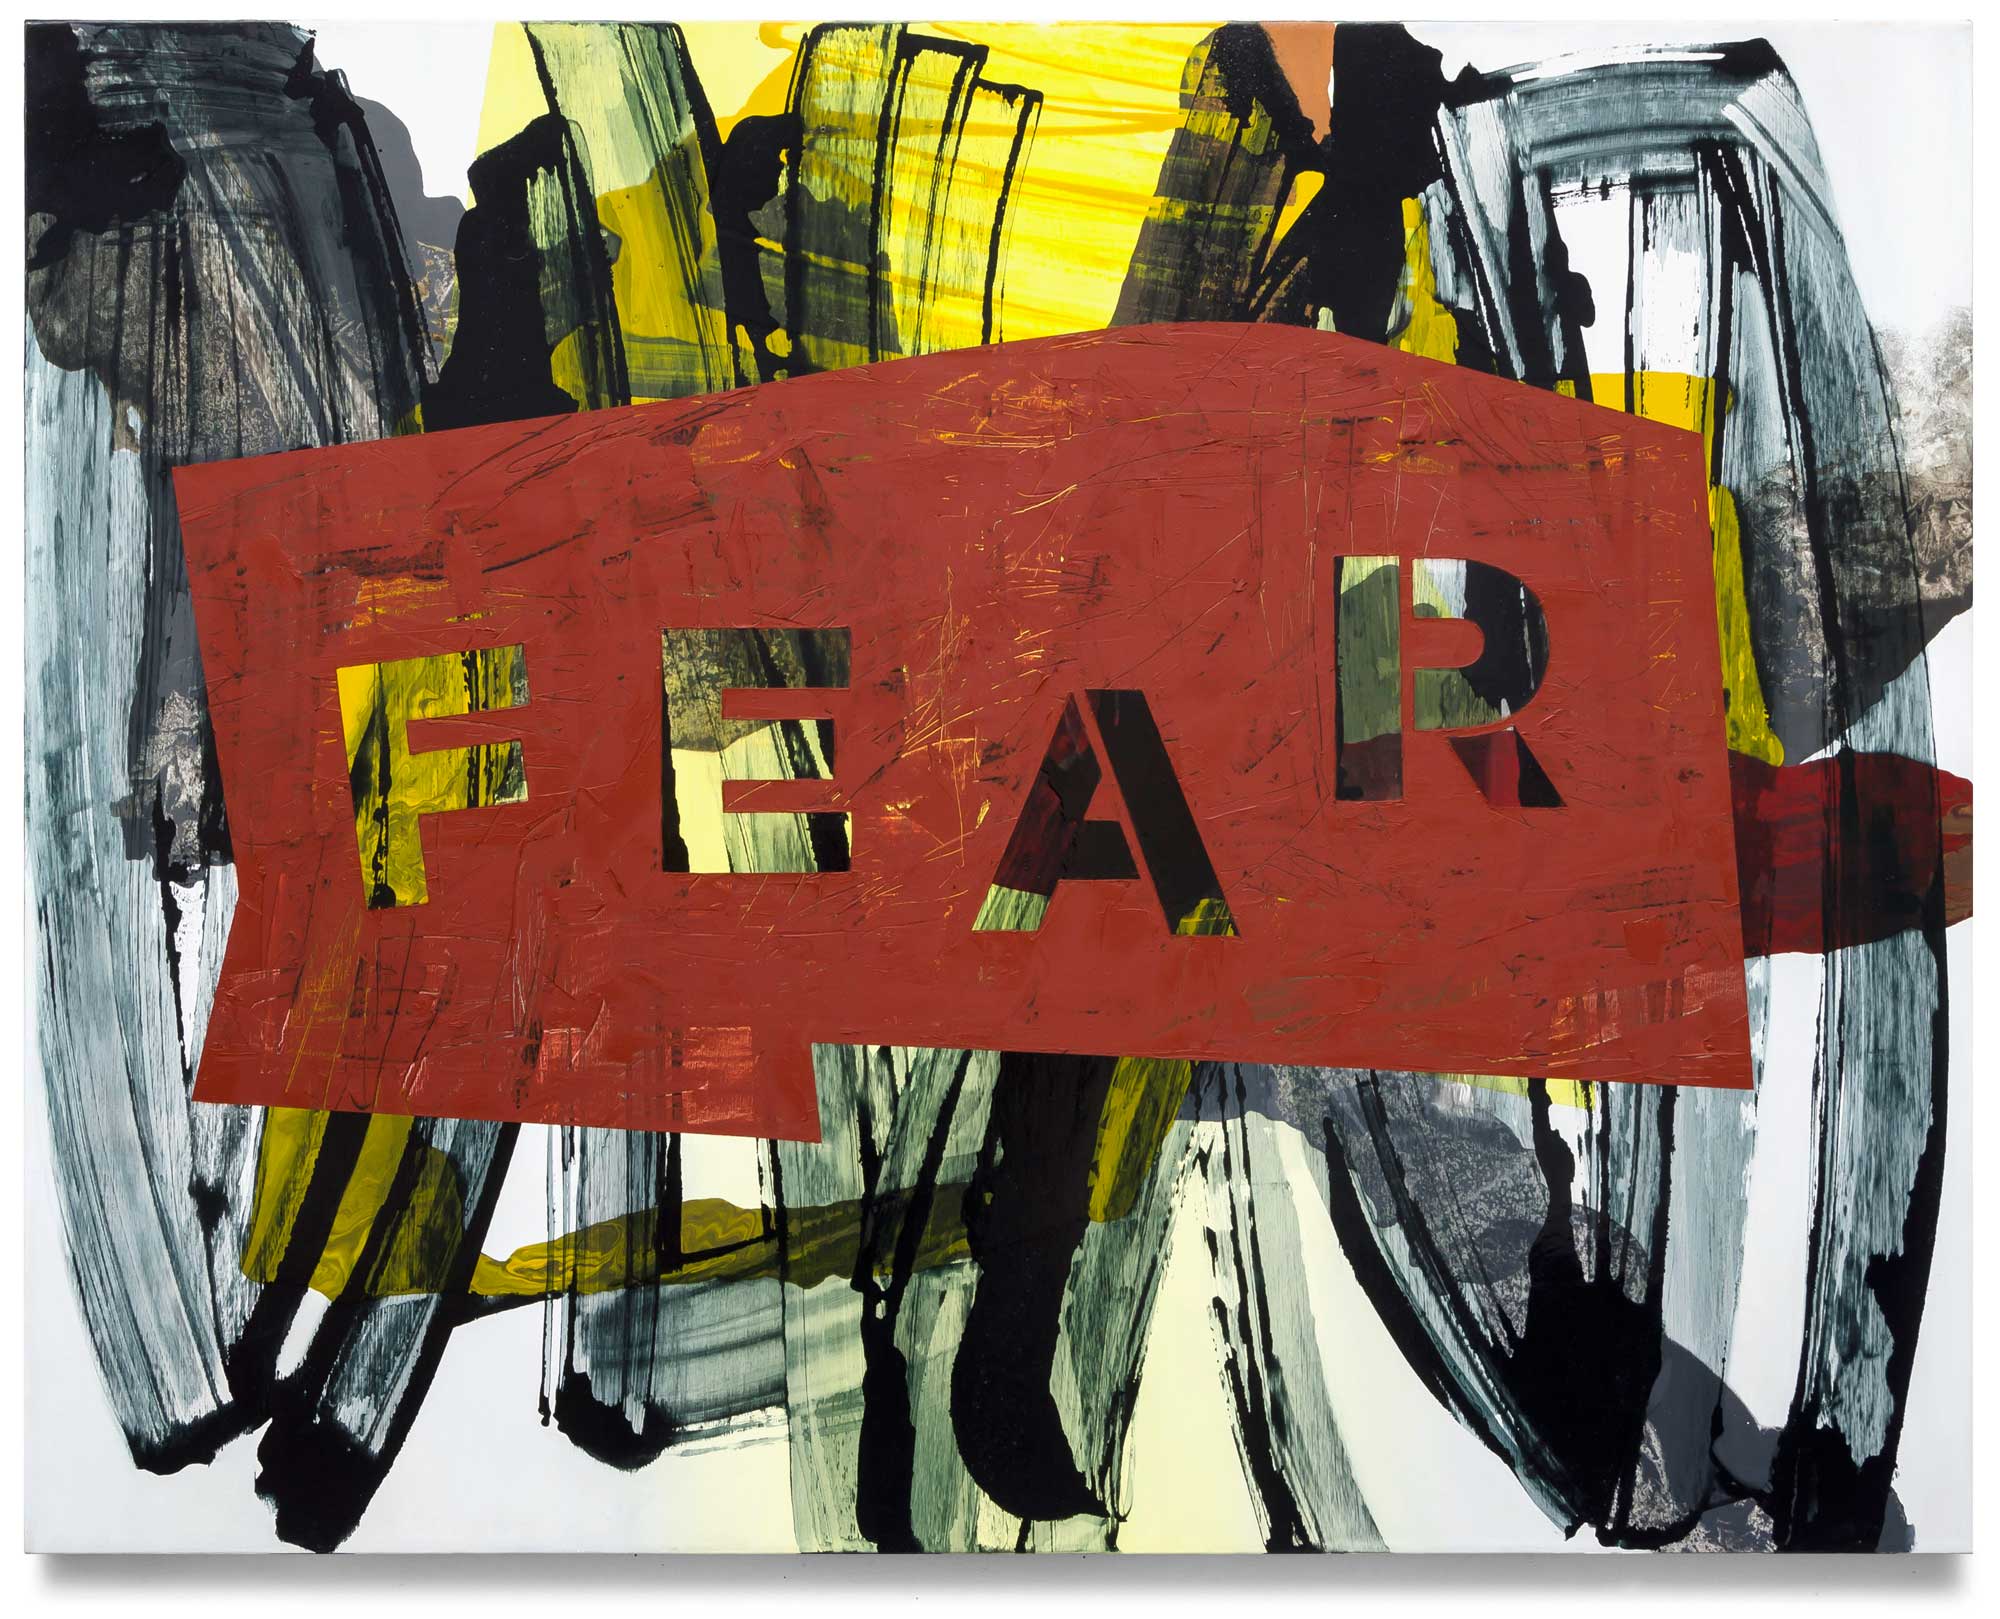 Fear-oil-on-canvas-111.76 cm x 142.24 cm.